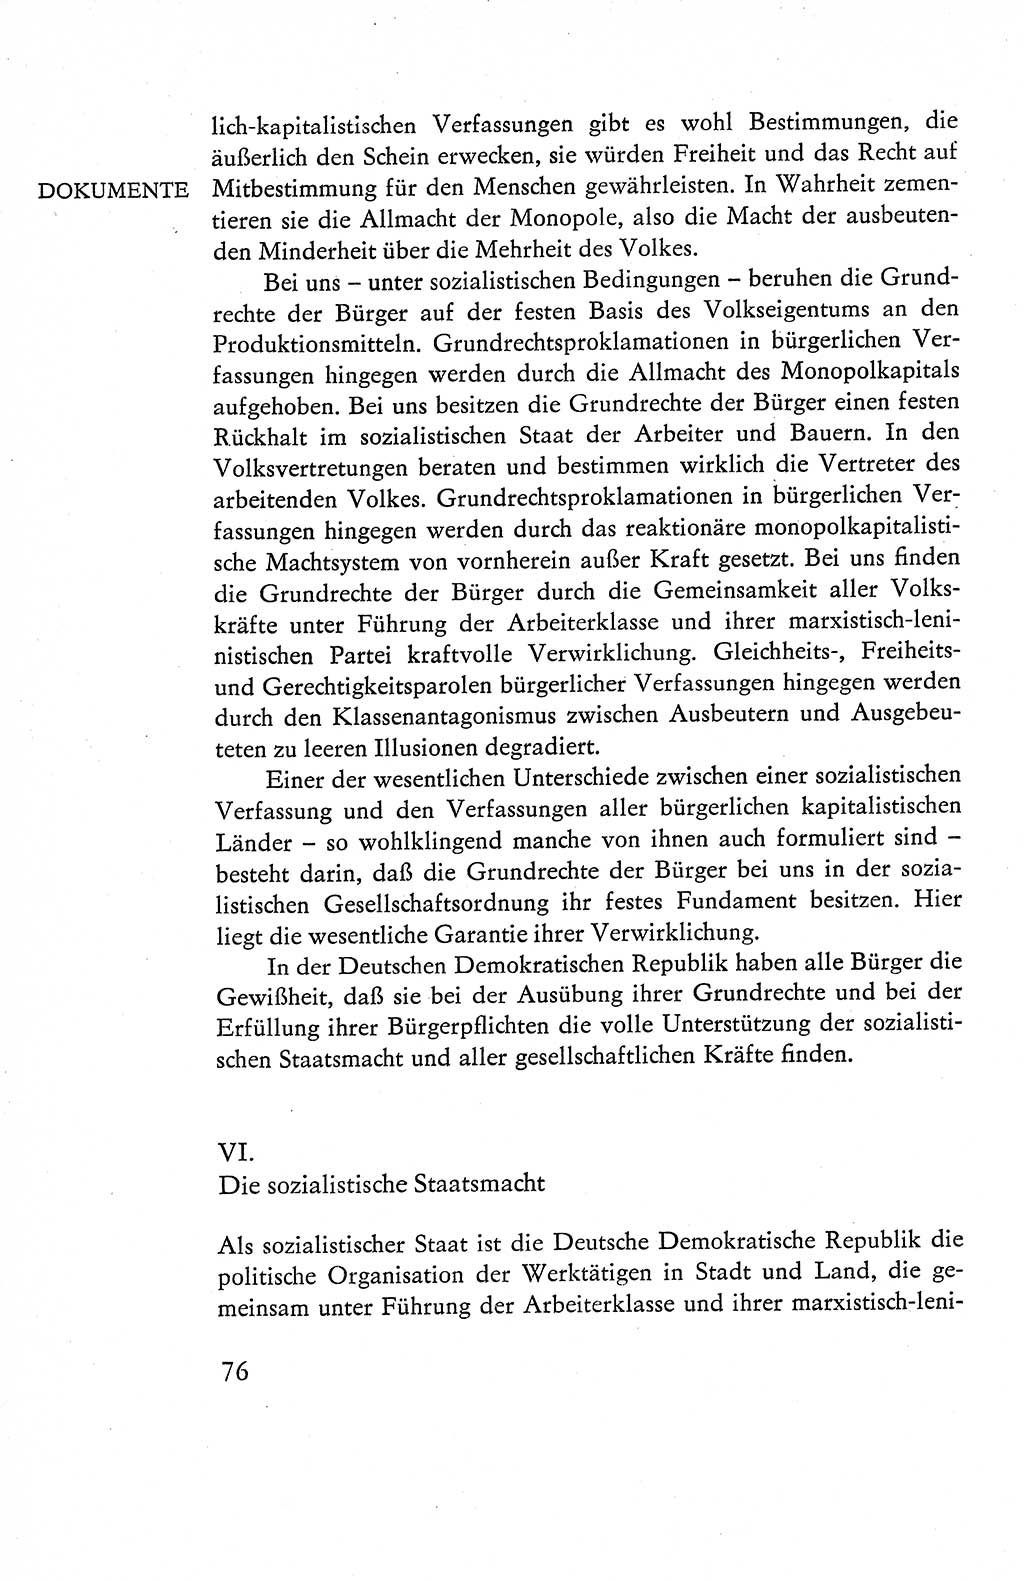 Verfassung der Deutschen Demokratischen Republik (DDR), Dokumente, Kommentar 1969, Band 1, Seite 76 (Verf. DDR Dok. Komm. 1969, Bd. 1, S. 76)